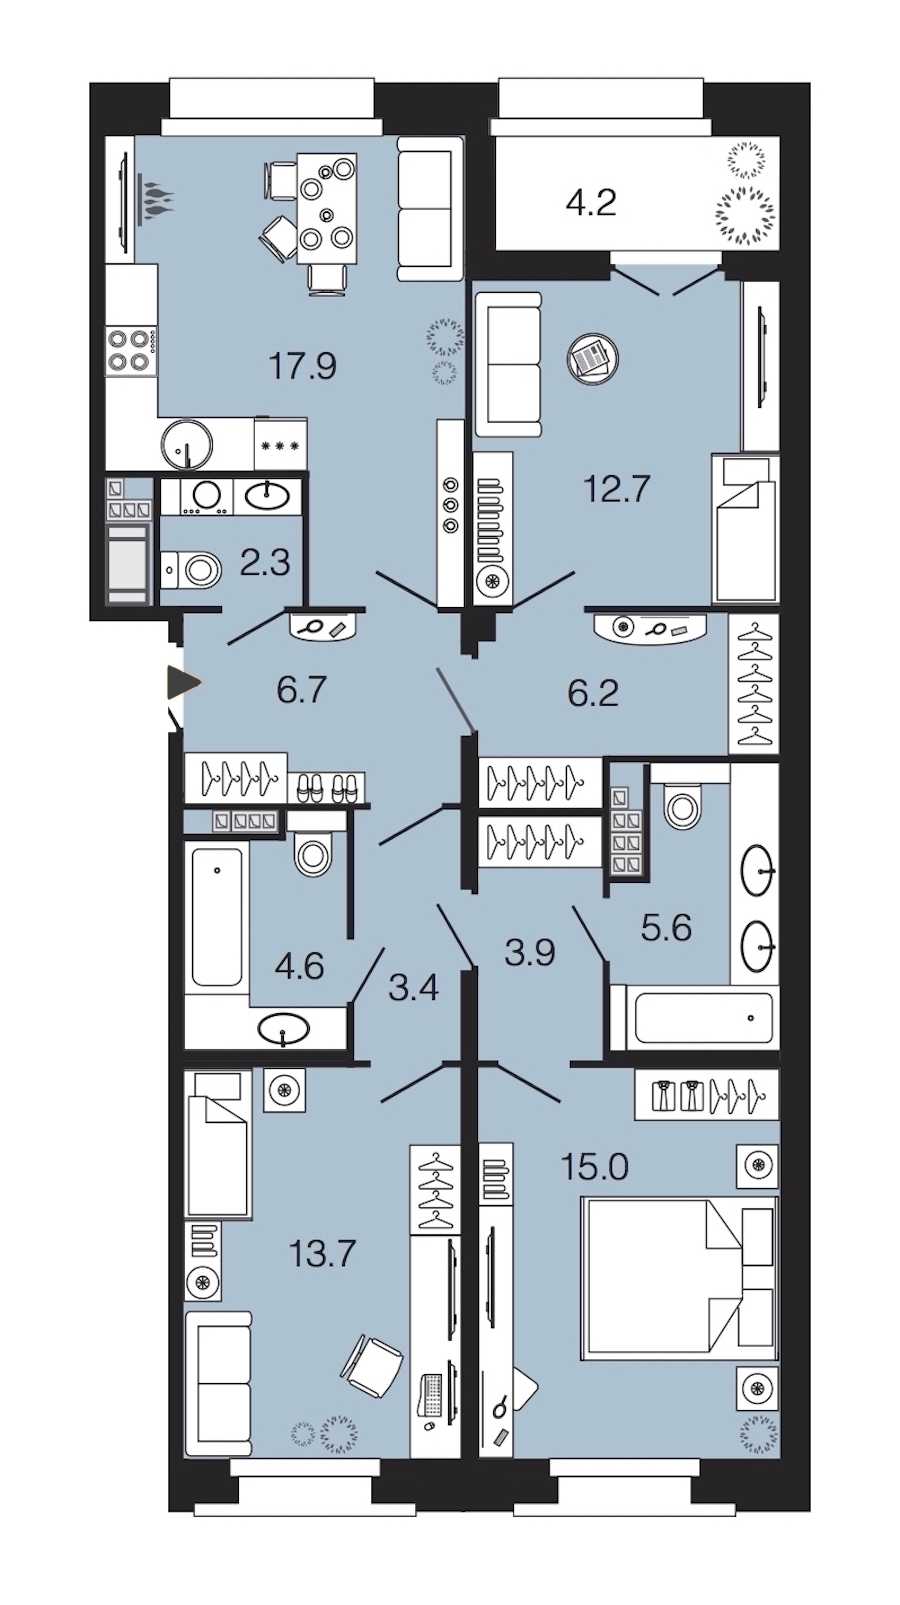 Трехкомнатная квартира в : площадь 92 м2 , этаж: 6 – купить в Санкт-Петербурге